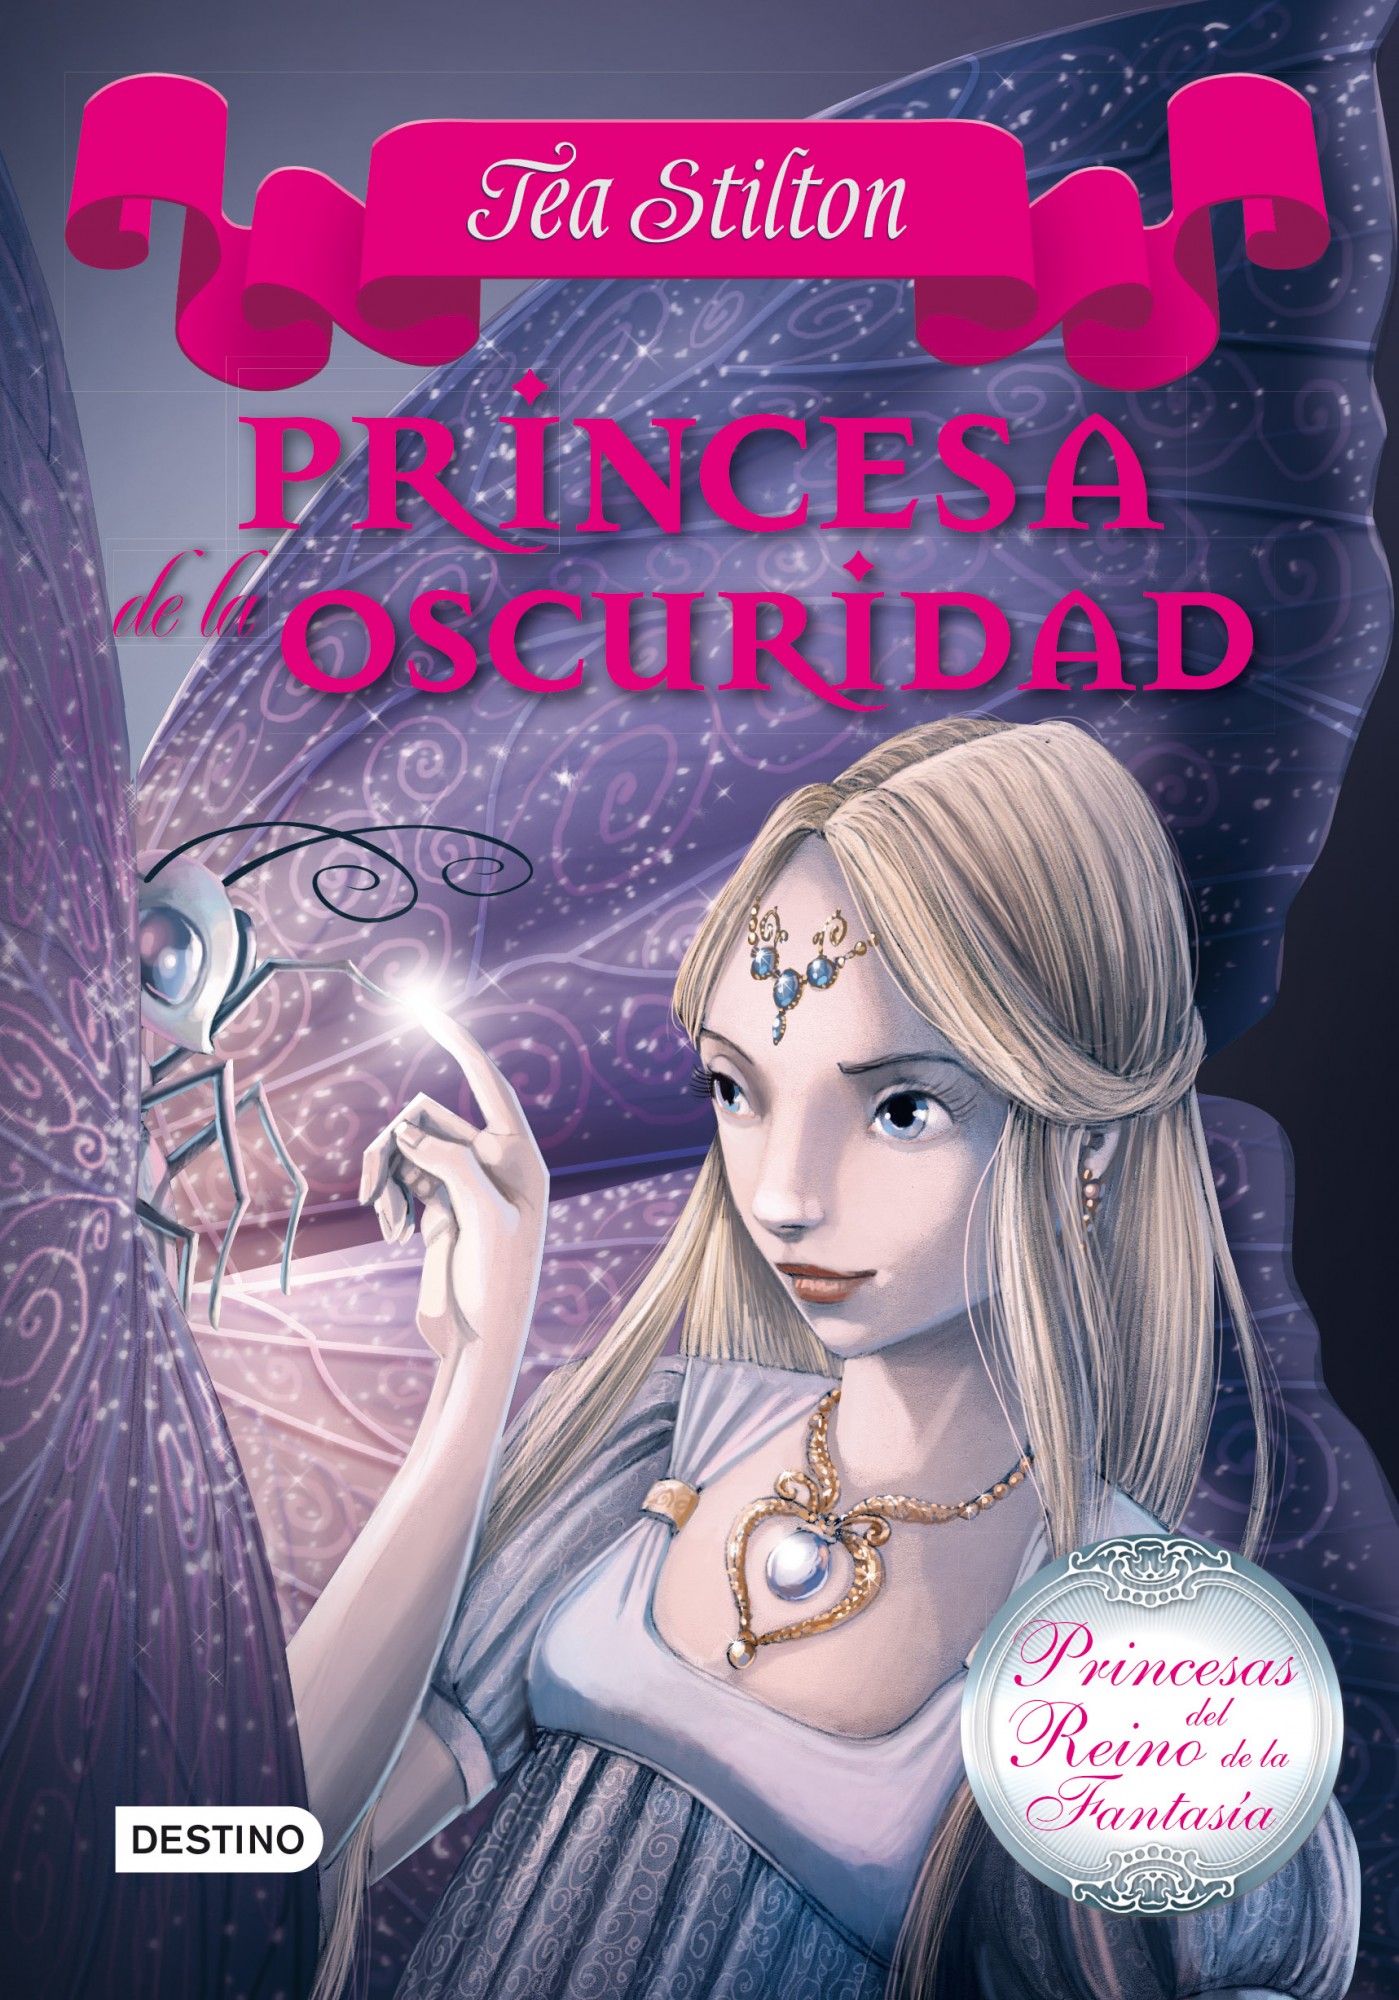 Resultado de imagen de princesas del reino de la fantasia